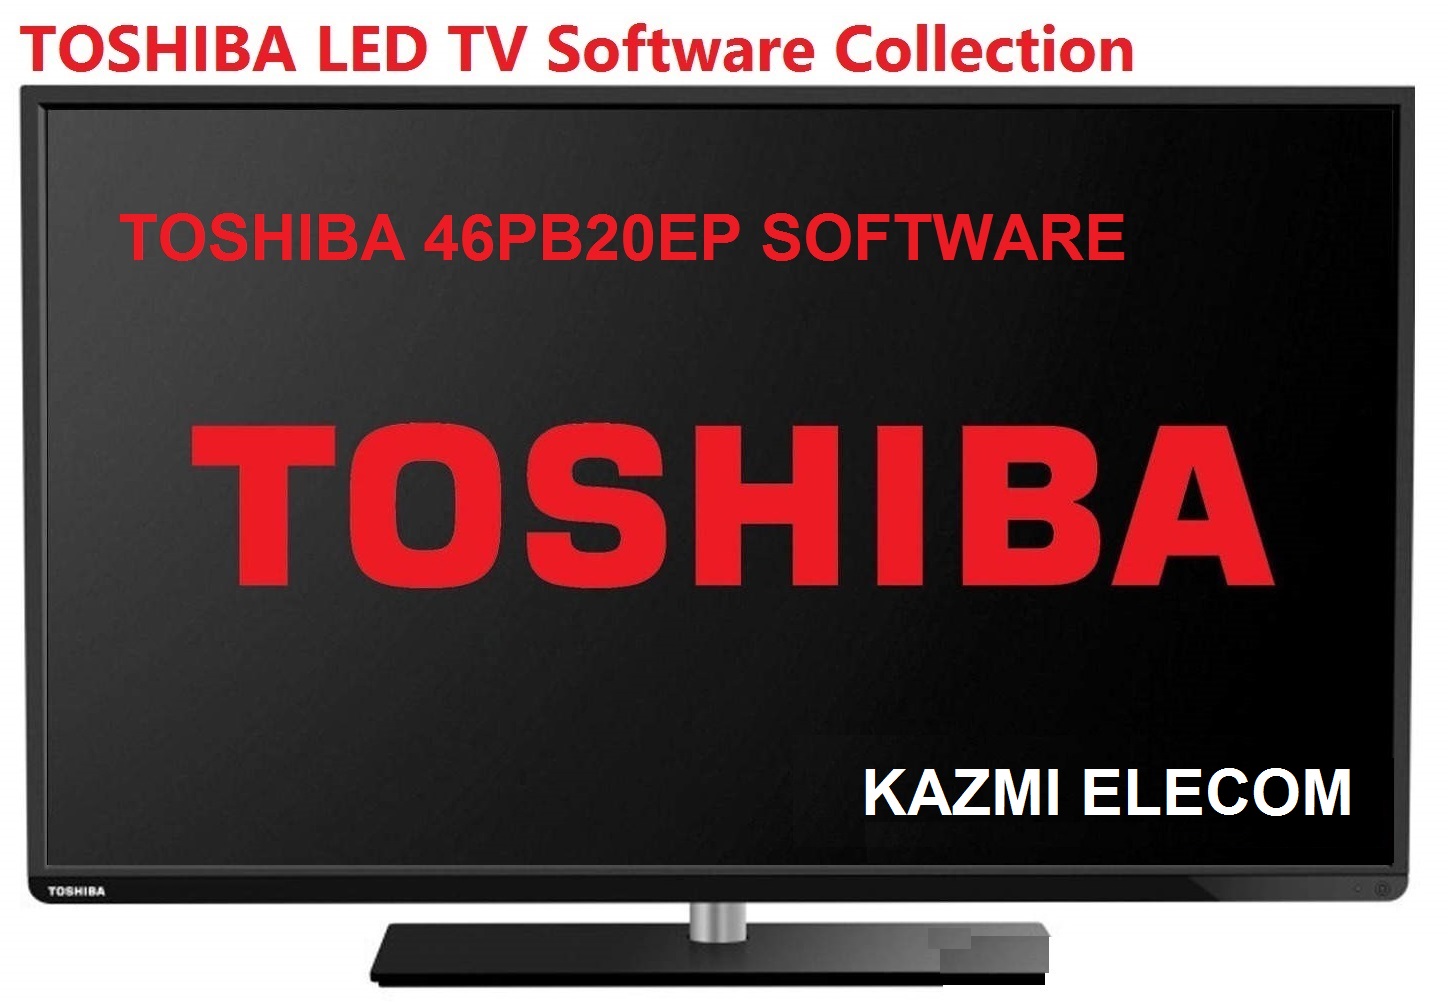 Toshiba 46Pb20Ep